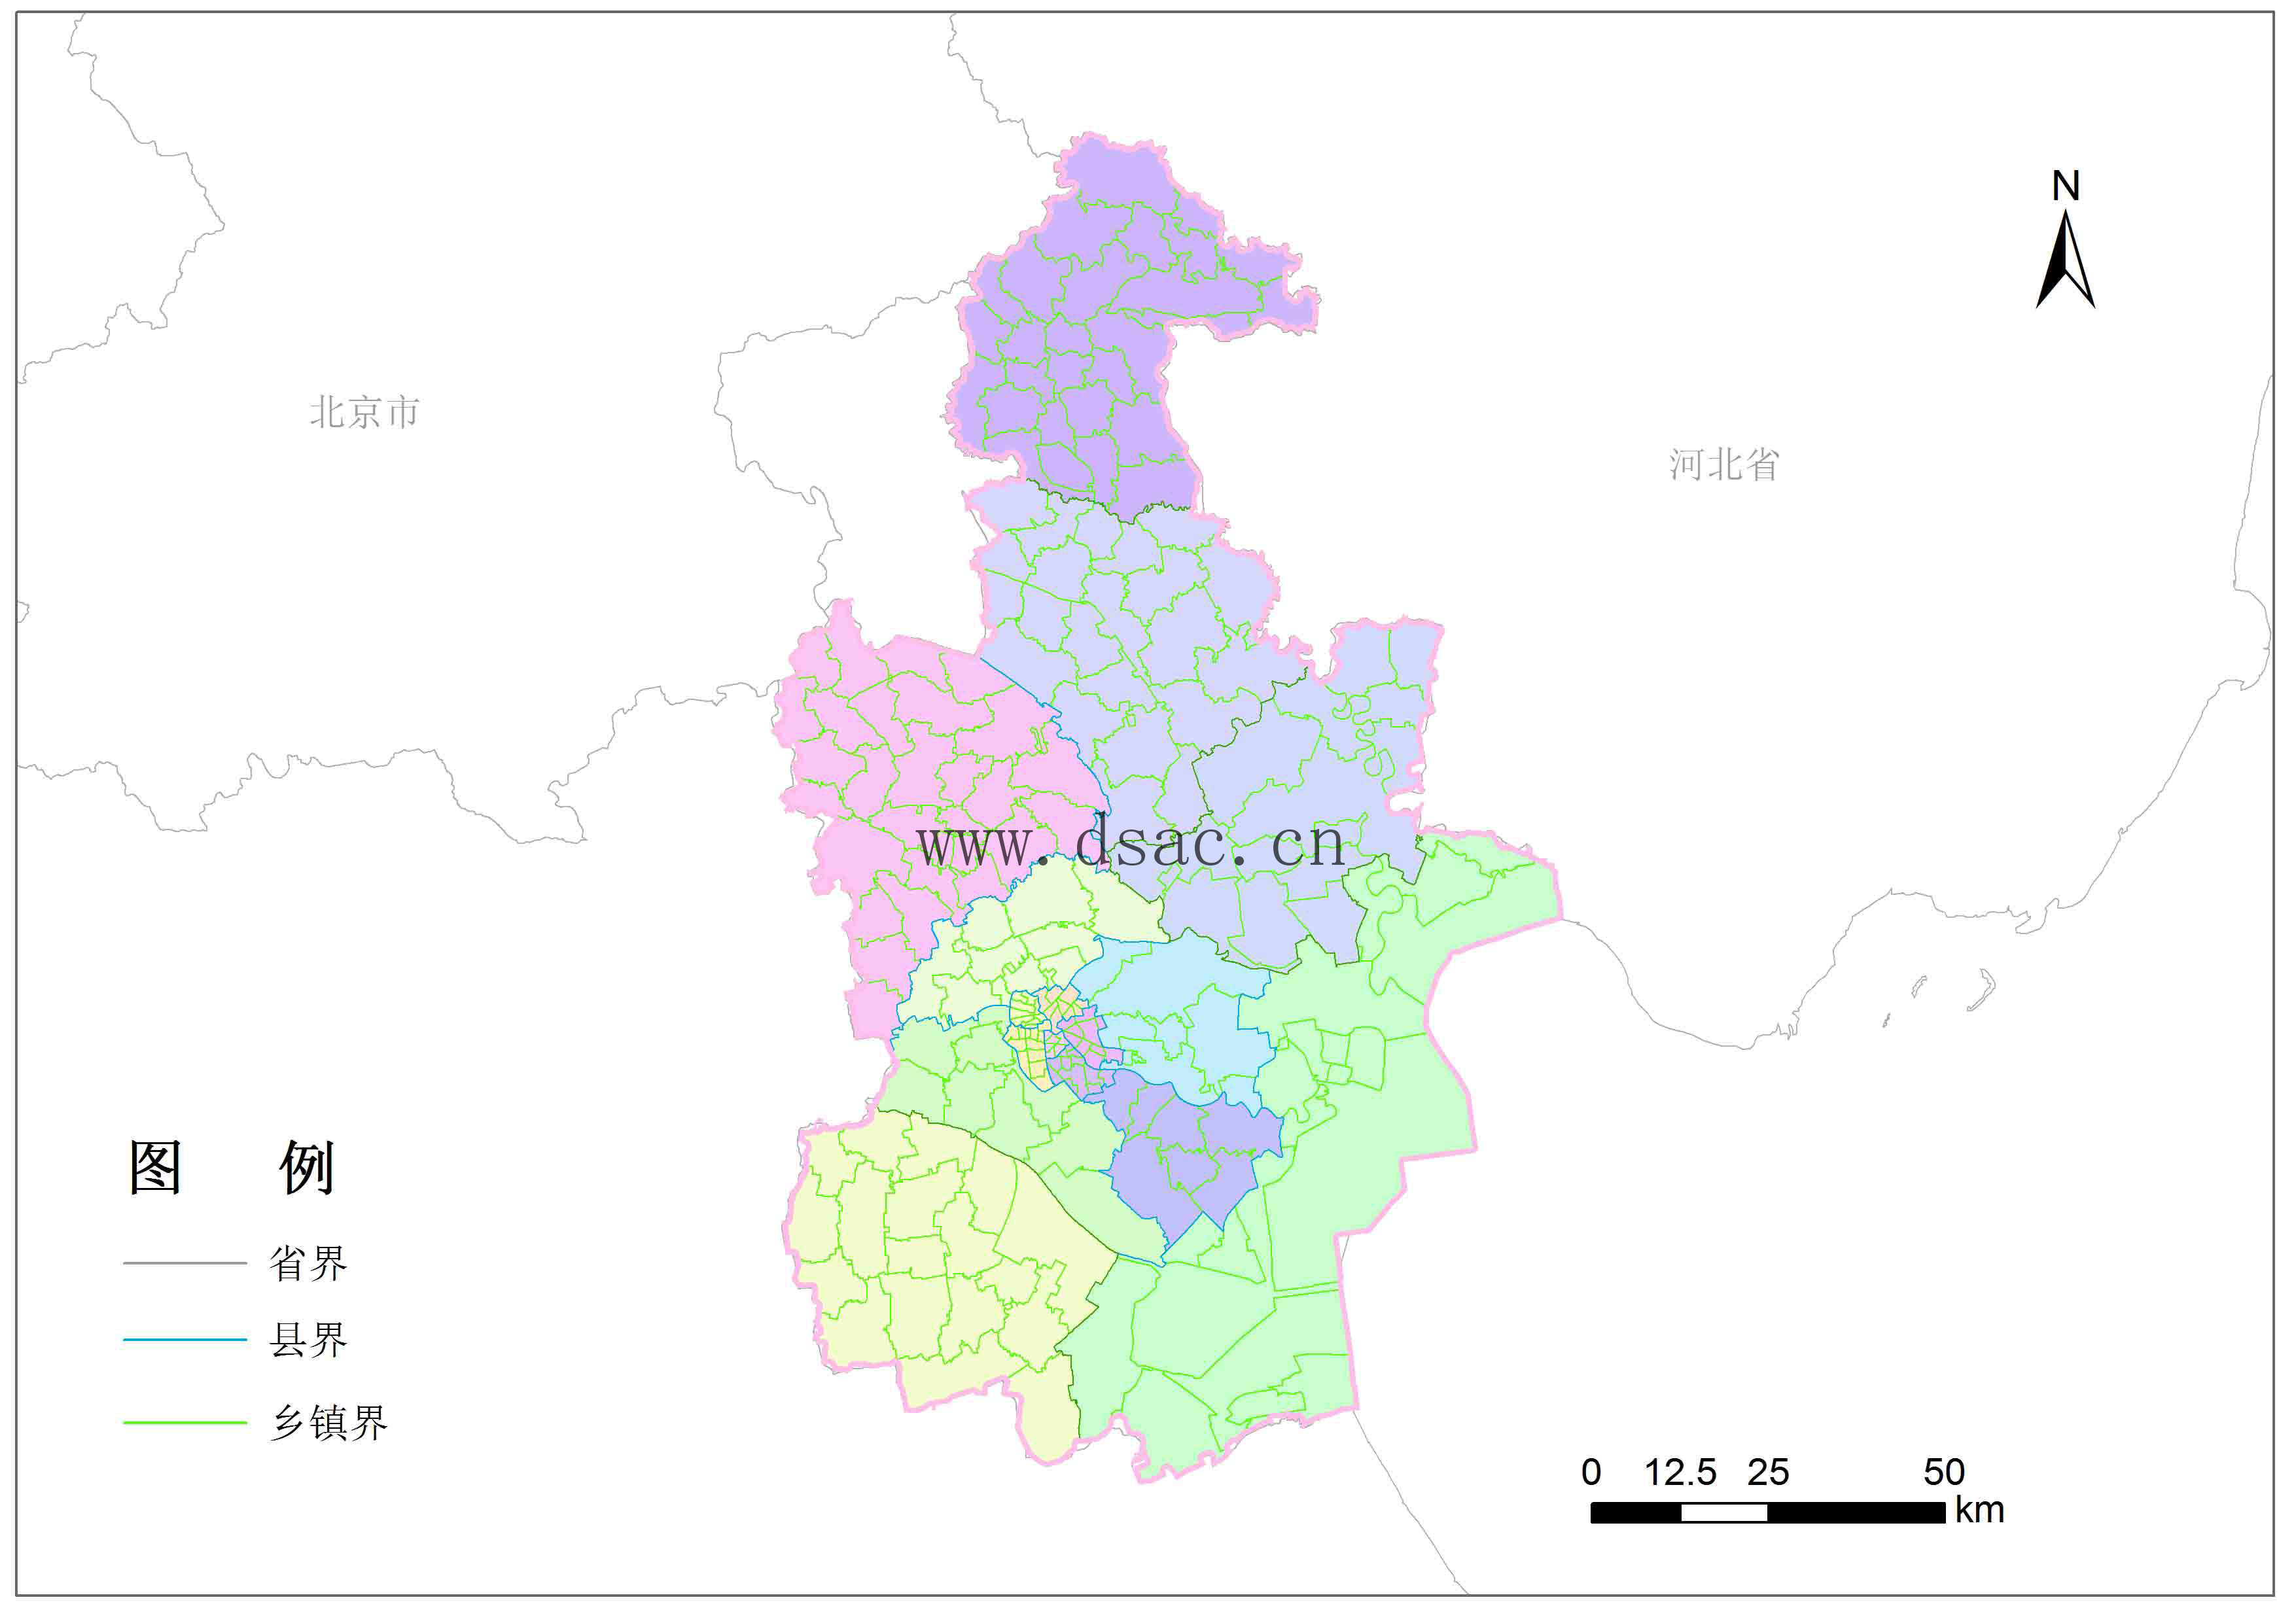 采用人机交互的方式开展行政区划地图矢量化工作,最终获取天津市乡镇图片